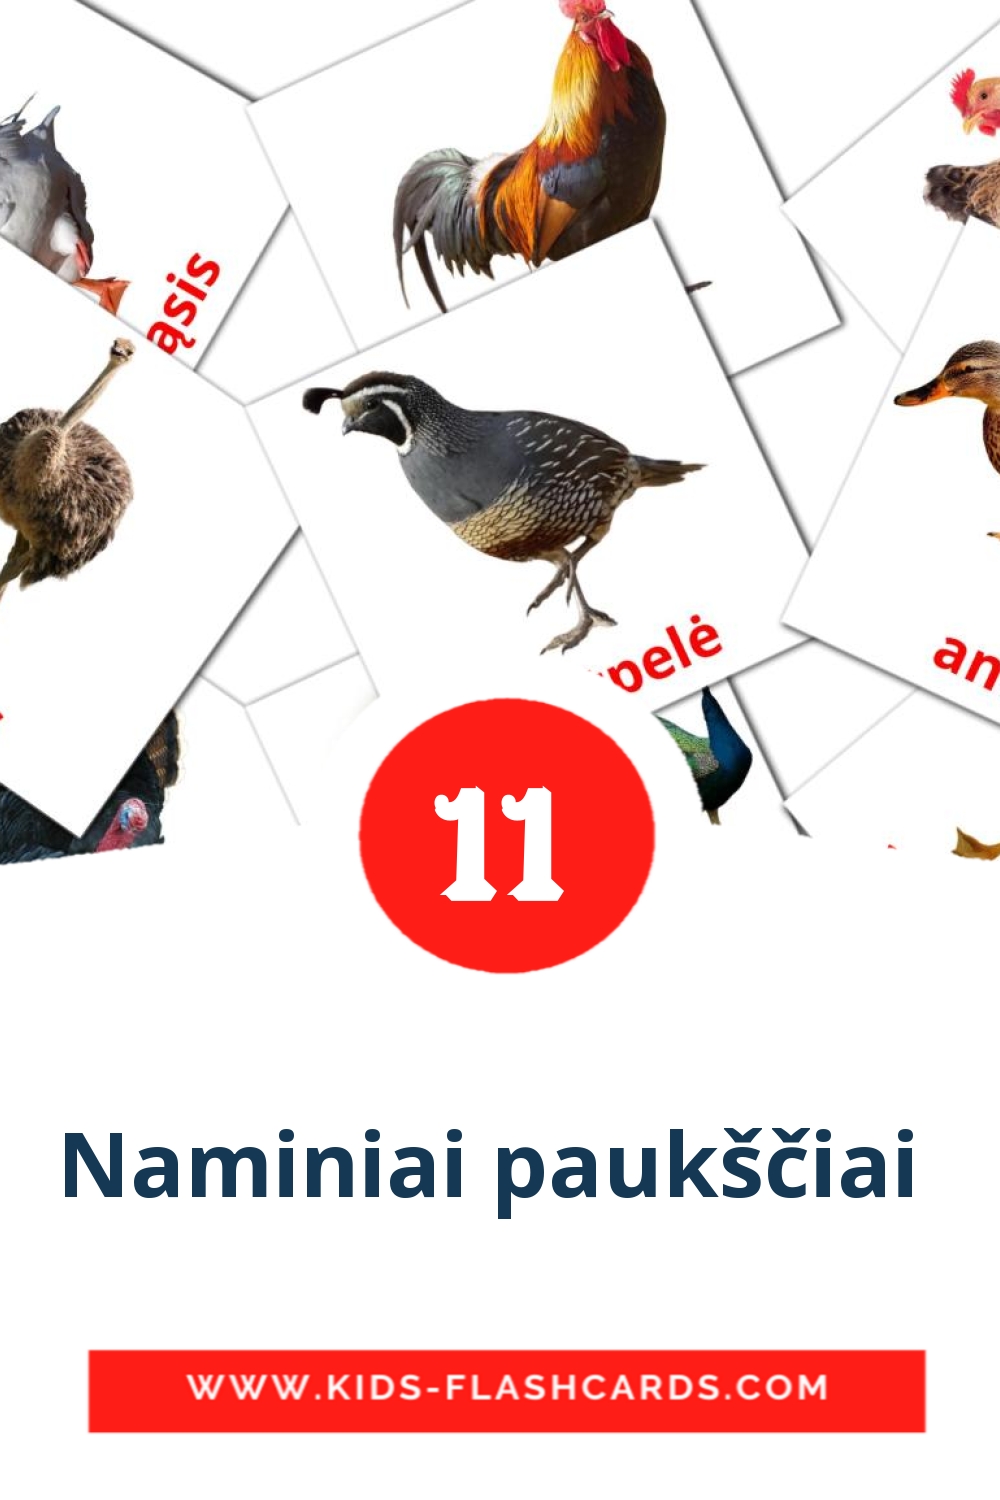 Naminiai paukščiai  на литовском для Детского Сада (11 карточек)